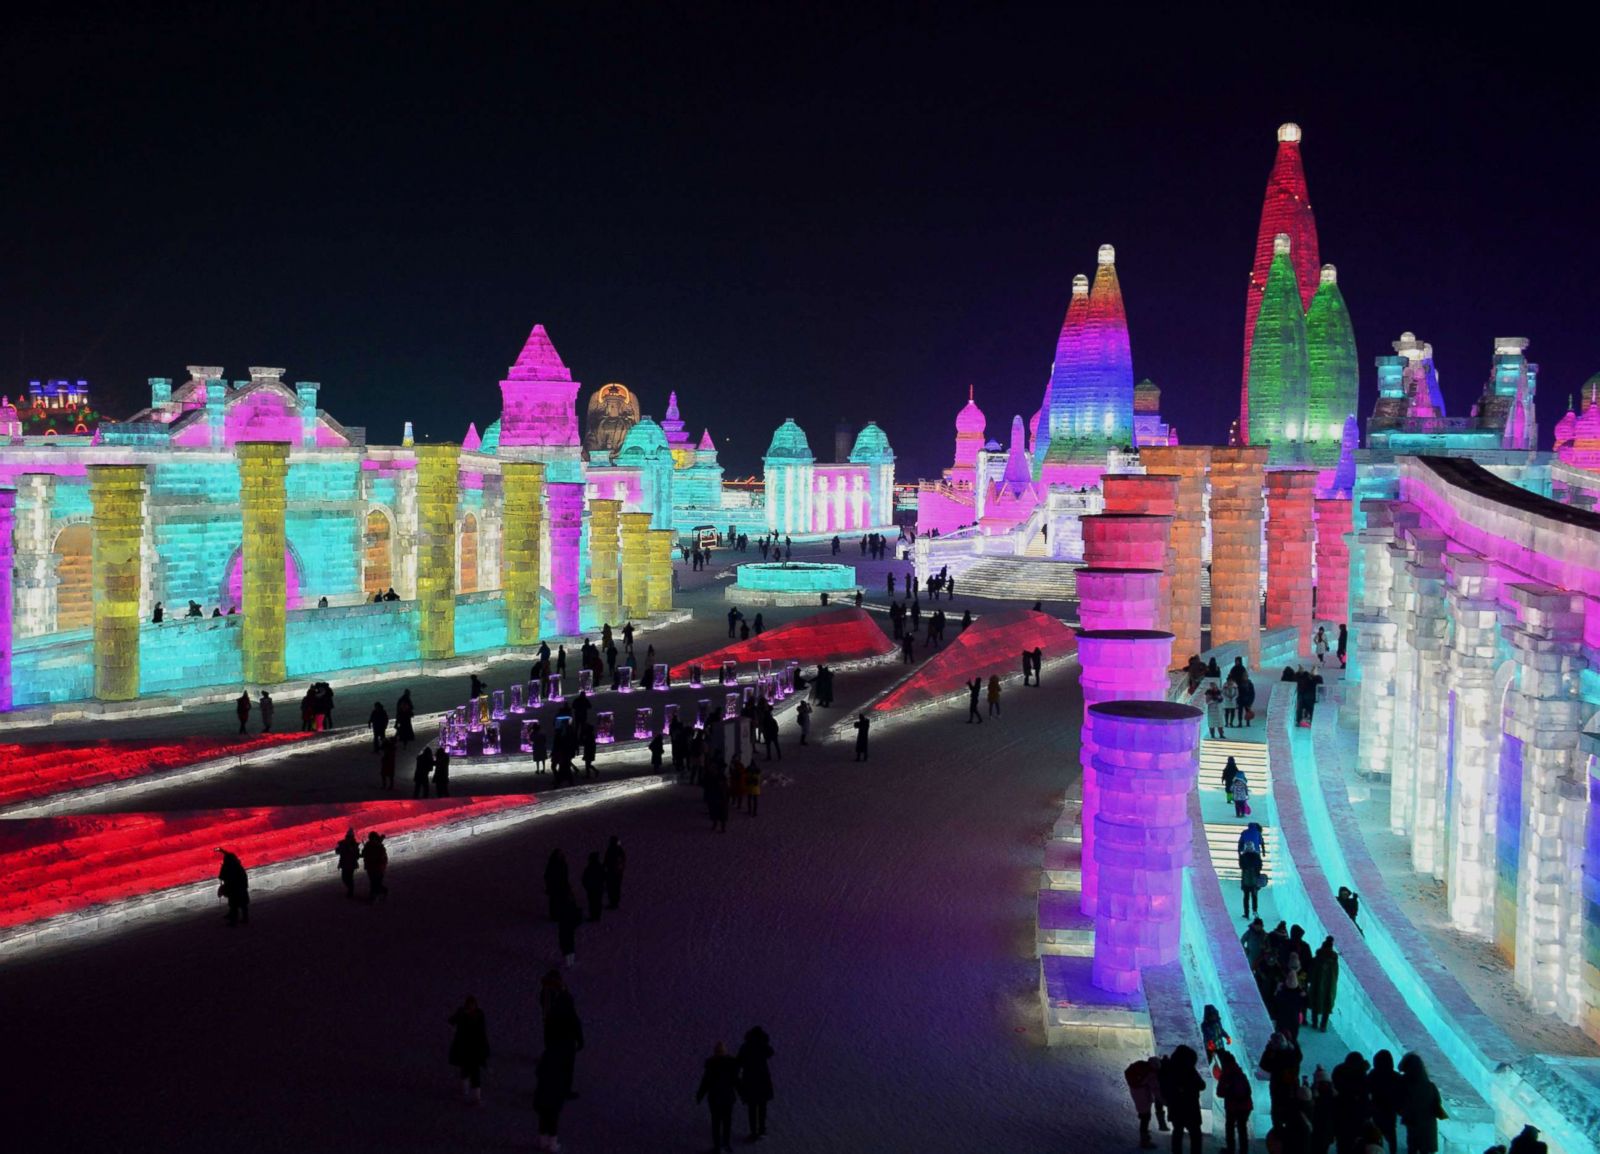 Ледовый город. Харбинский Международный фестиваль льда и снега. Ледяной город в Китае Харбин. Харбинский фестиваль ледяных скульптур. Харбин зимний городок.